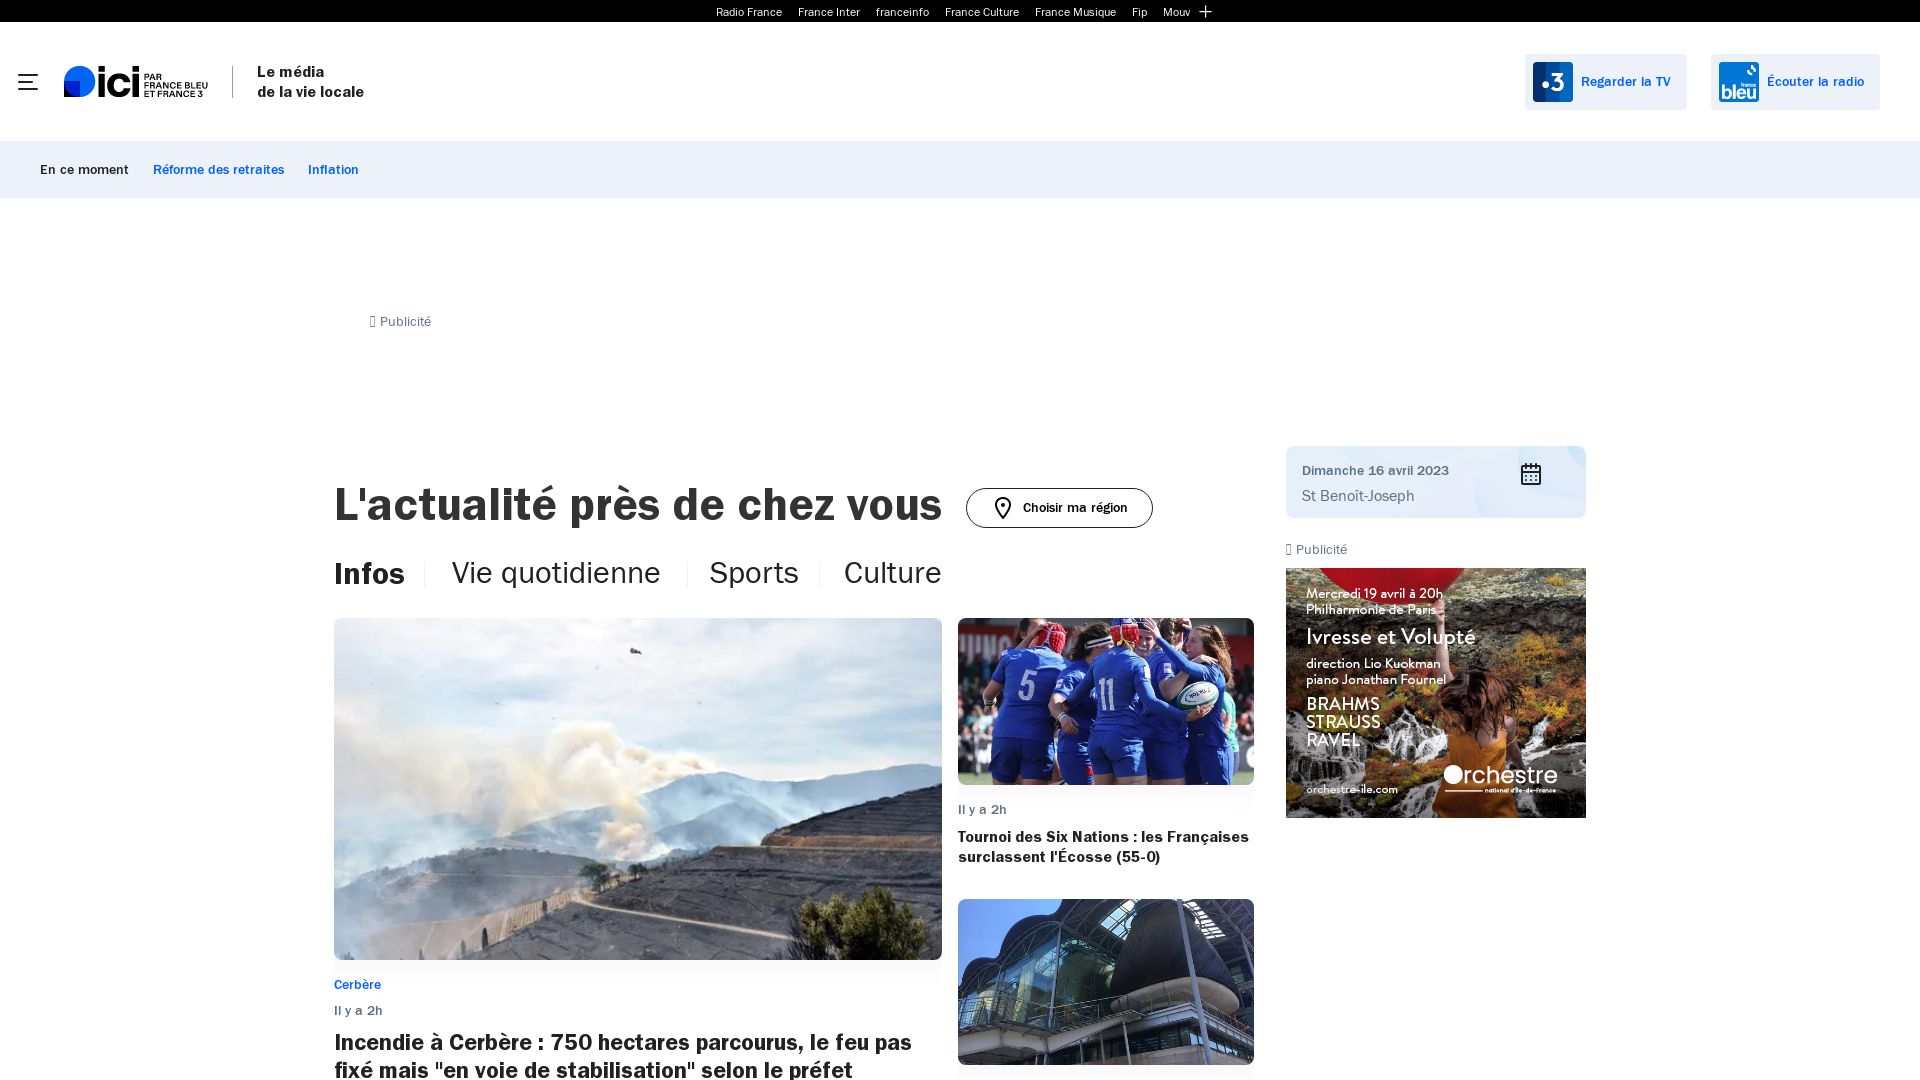 Website status francebleu.fr is   ONLINE